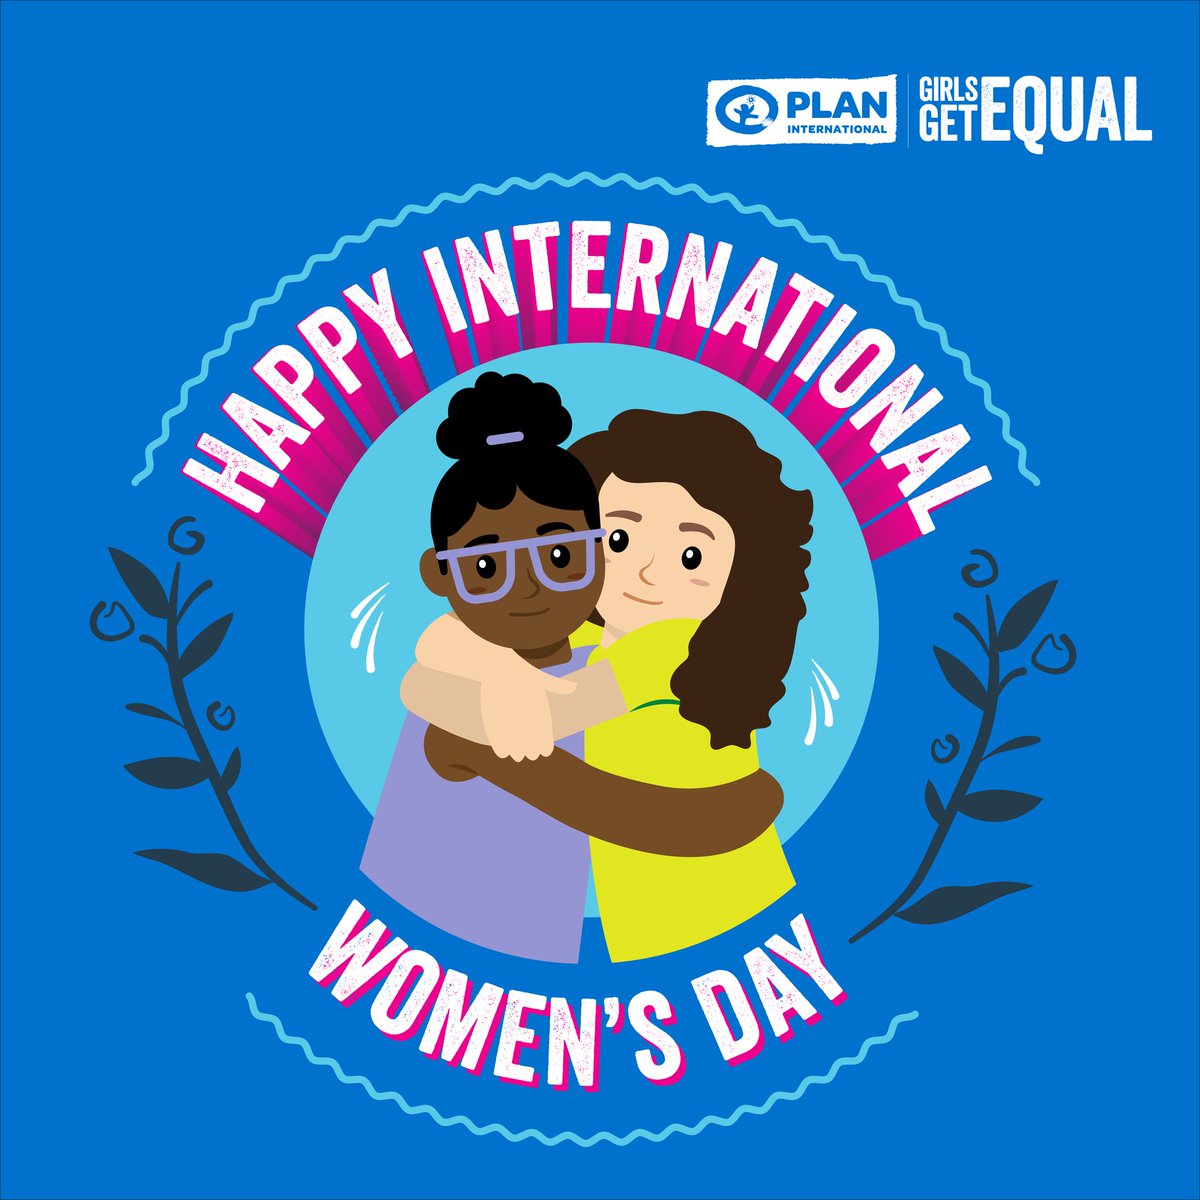 Happy International Women's Day!
#IWD #EqualPowerNow
#IWD2023